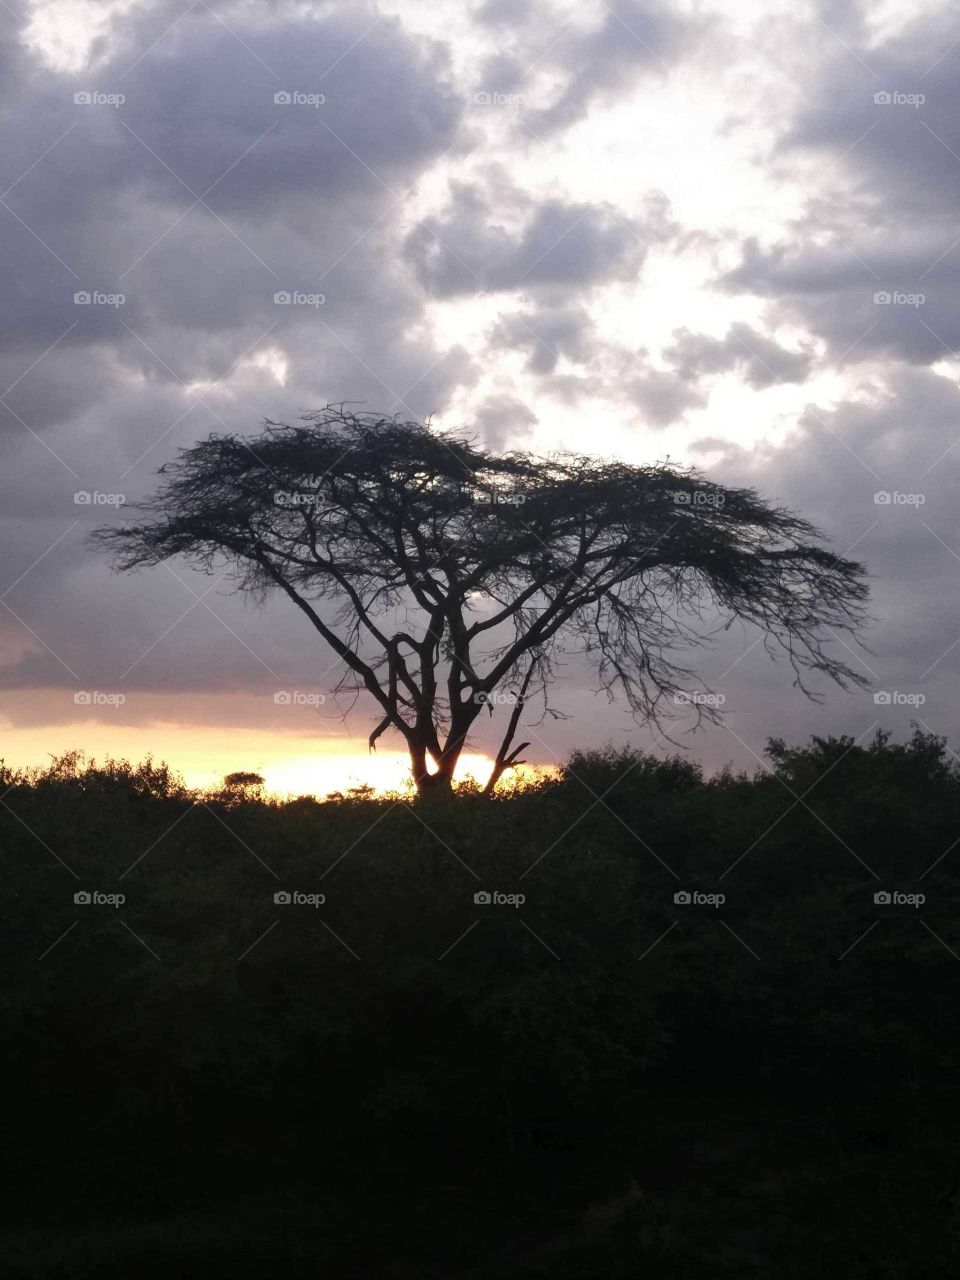 Acacia tree at sunset